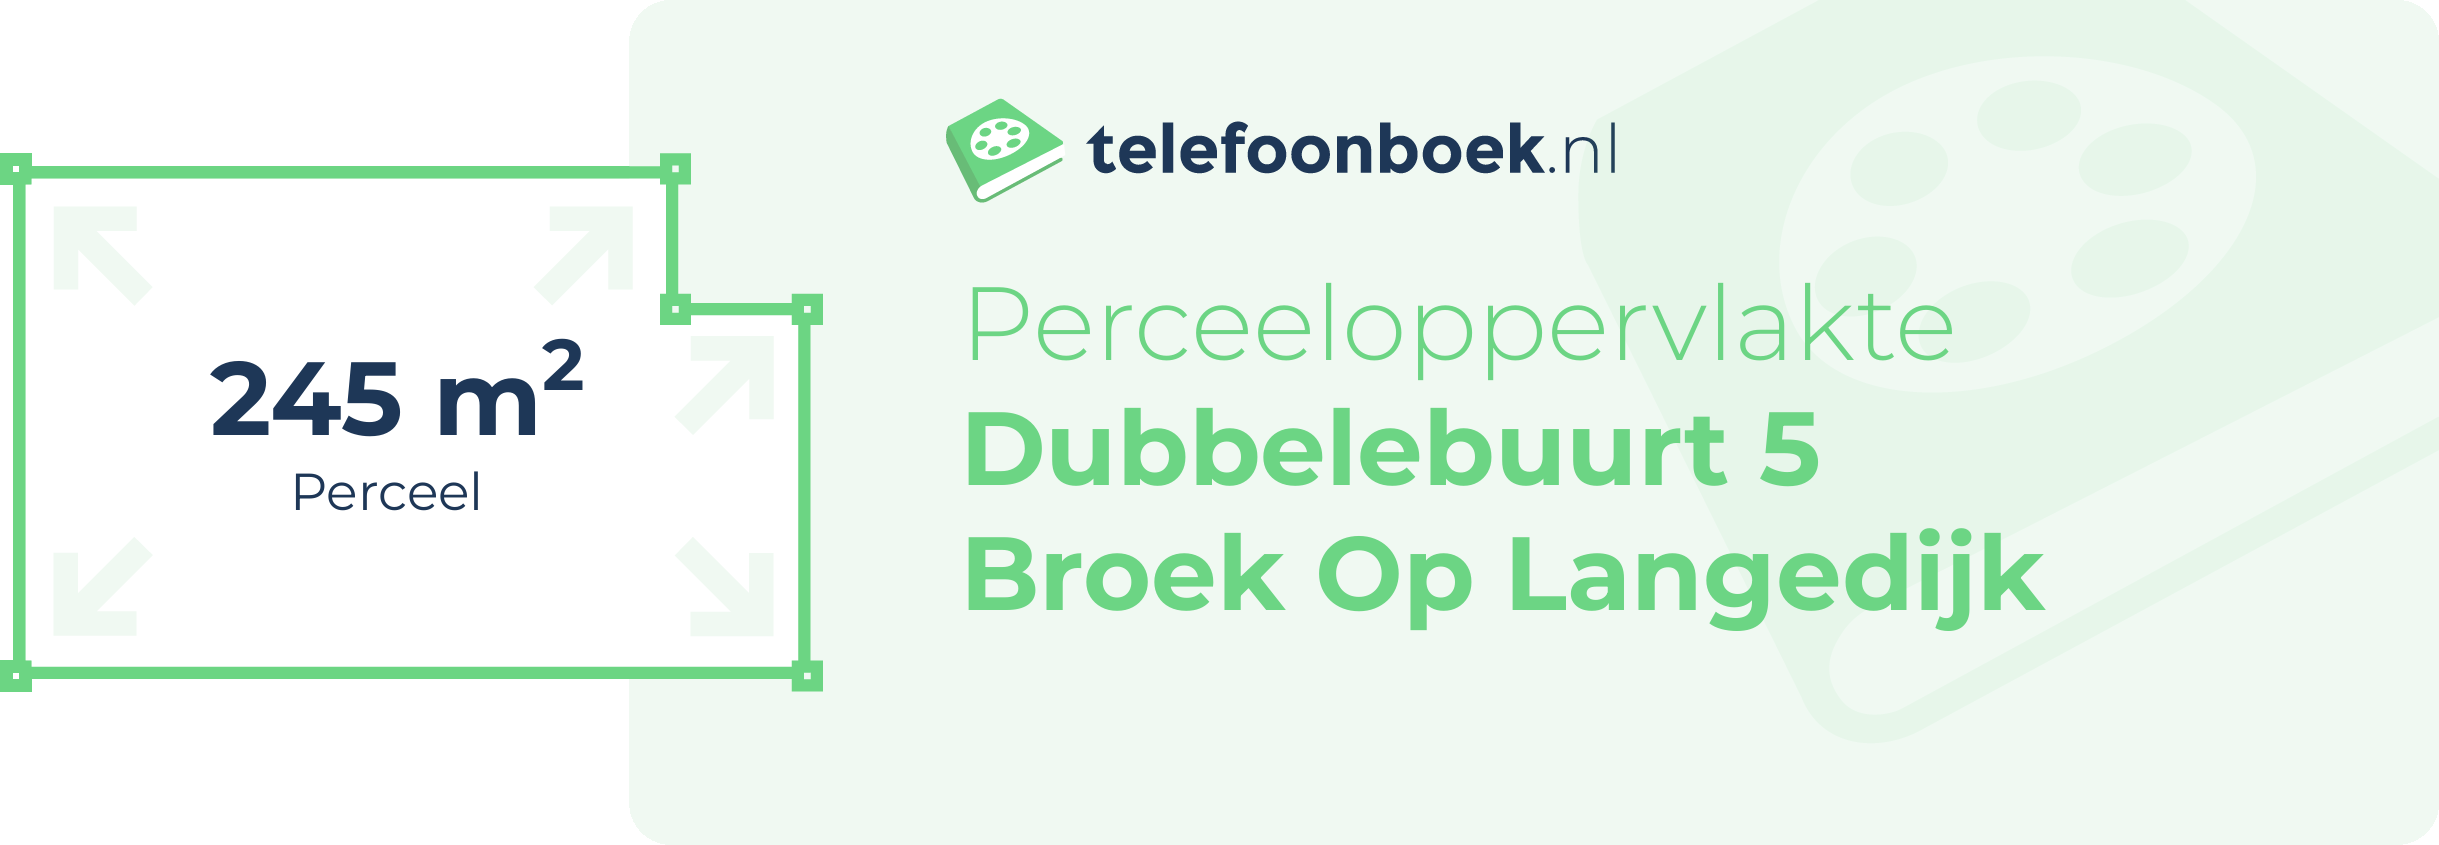 Perceeloppervlakte Dubbelebuurt 5 Broek Op Langedijk